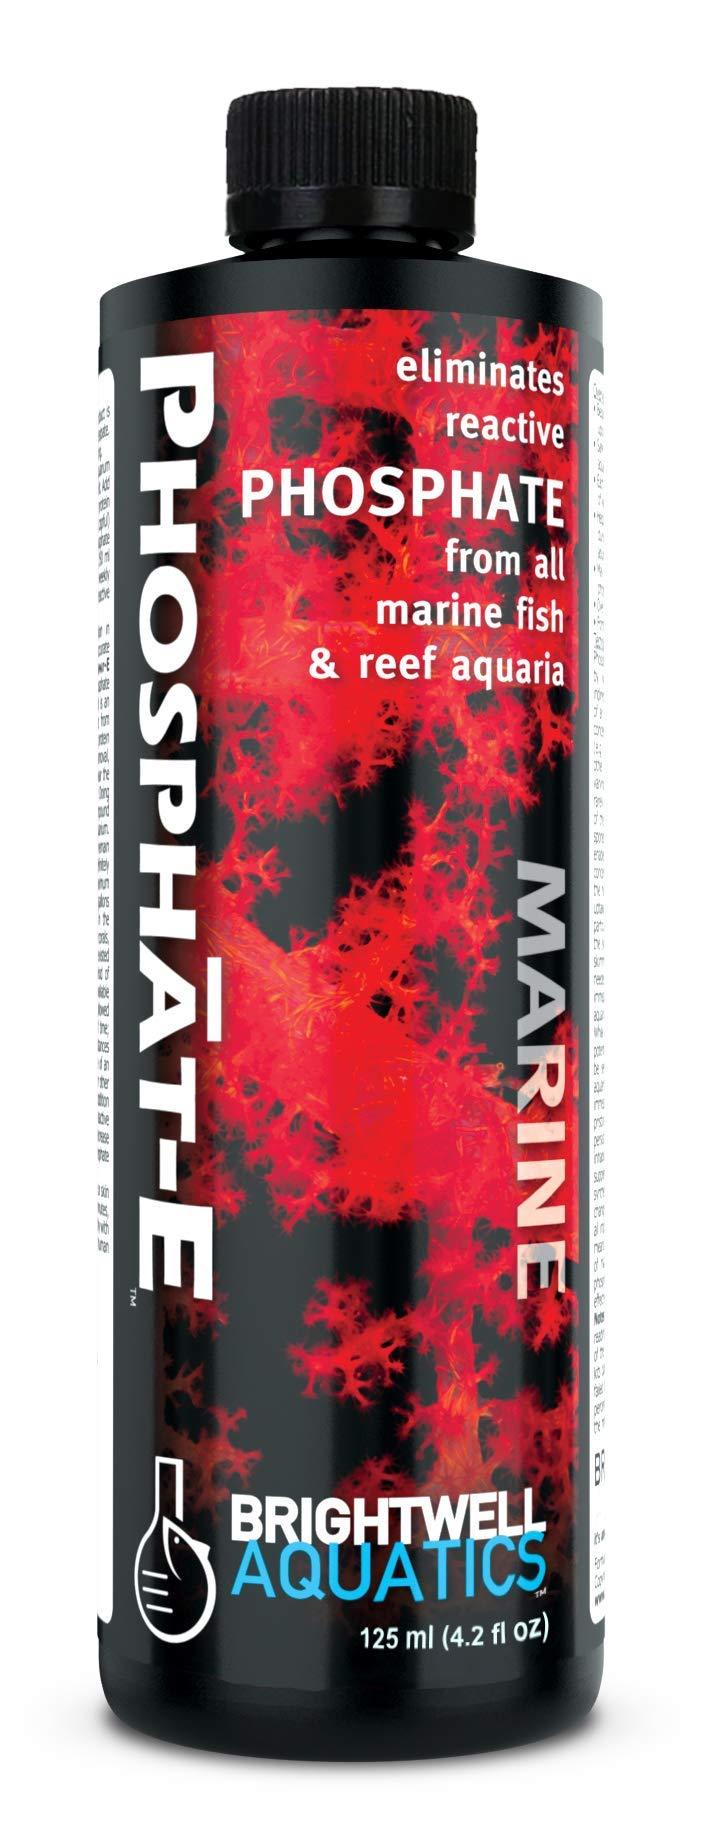 [Australia] - Brightwell Aquatics Phosphat-E - Liquid Phosphate Remover for Marine Fish and Reef Aquarium Tank 125-ML 